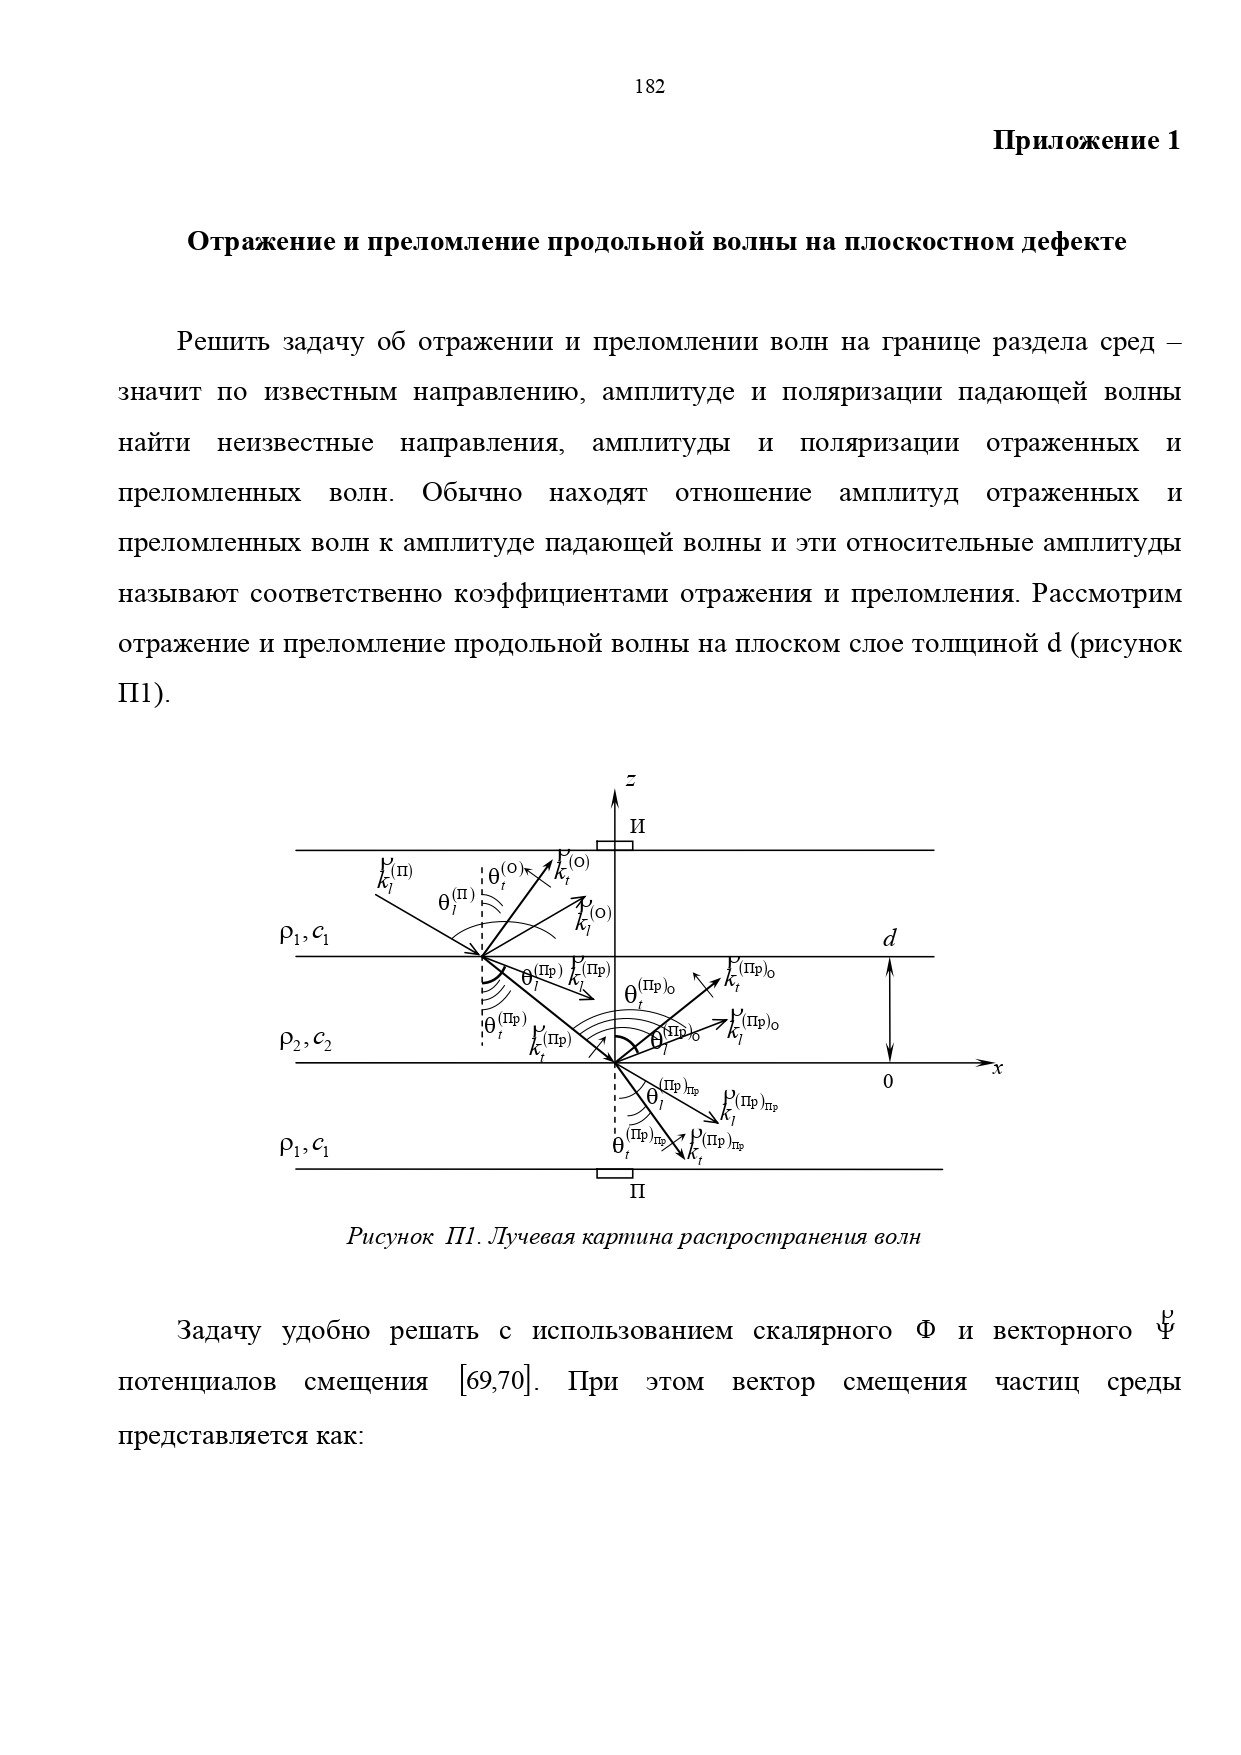 prilozheniya-v-dissertacionnoj-rabote